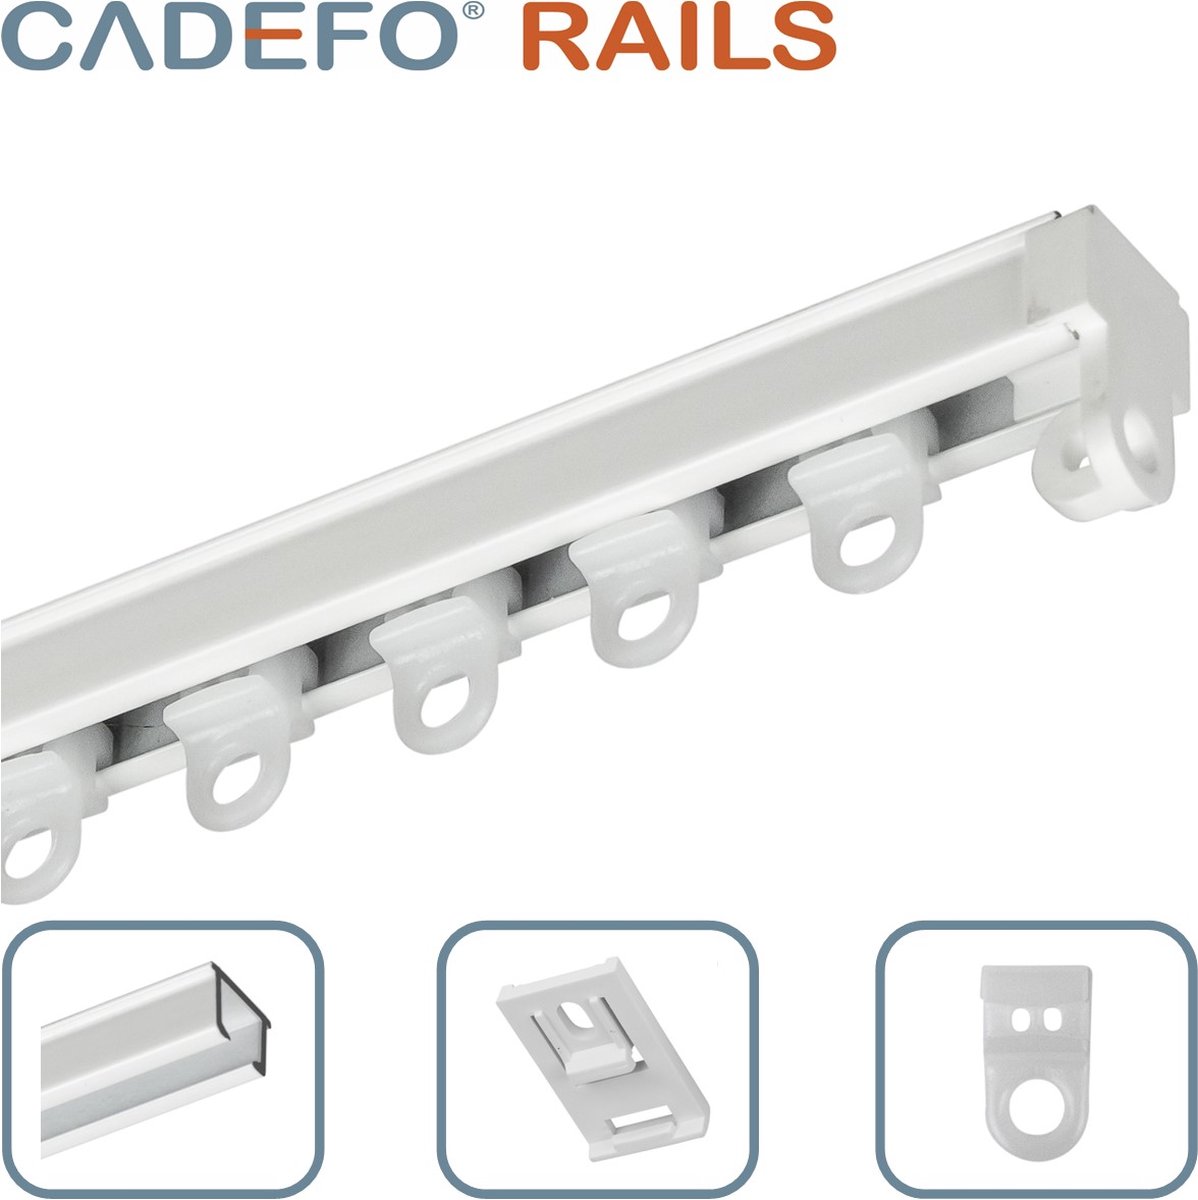 CADEFO RAILS (351 - 400 cm) Gordijnrails - Compleet op maat! - UIT 1 STUK - Leverbaar tot 6 meter - Plafondbevestiging - Lengte 398 cm